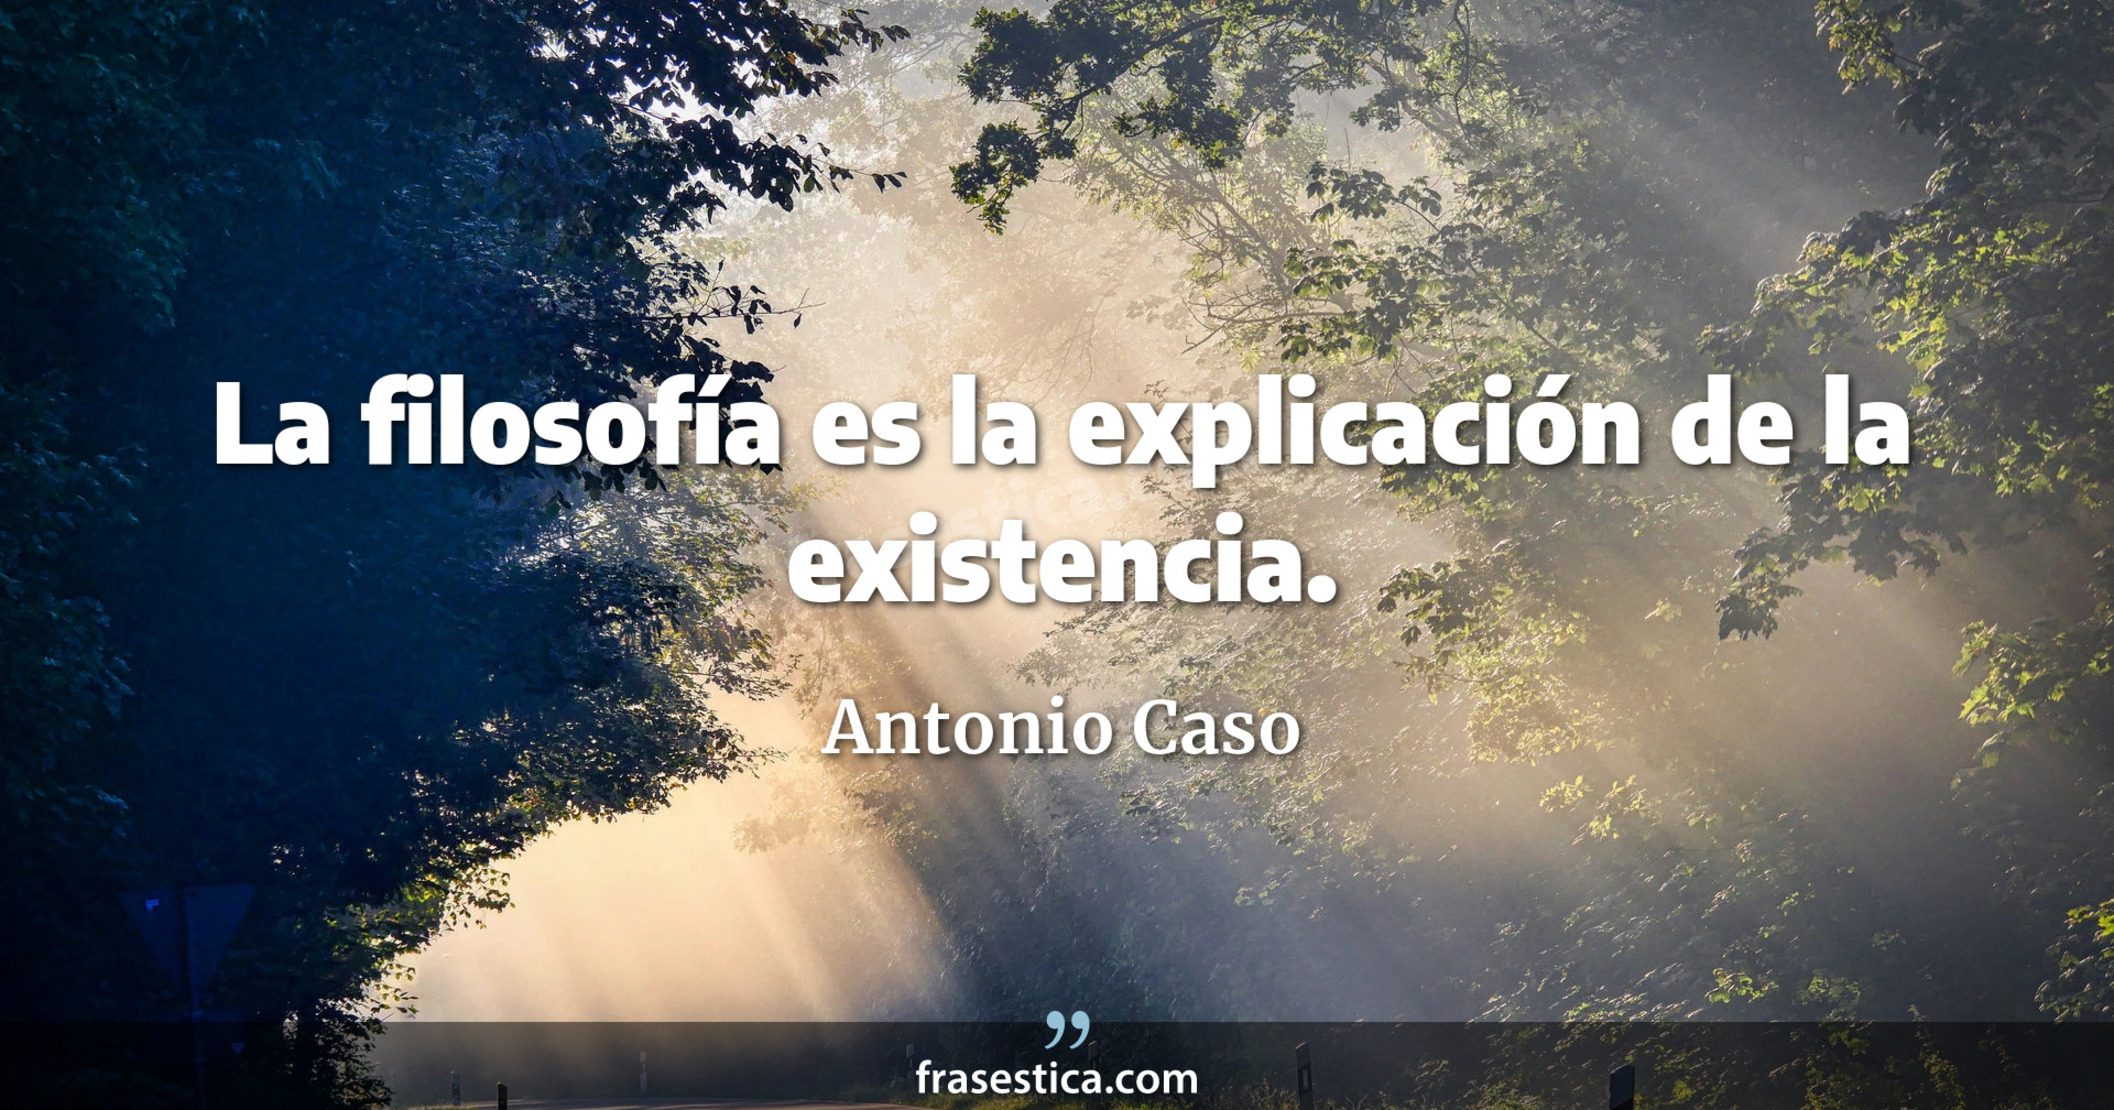 La filosofía es la explicación de la existencia. - Antonio Caso